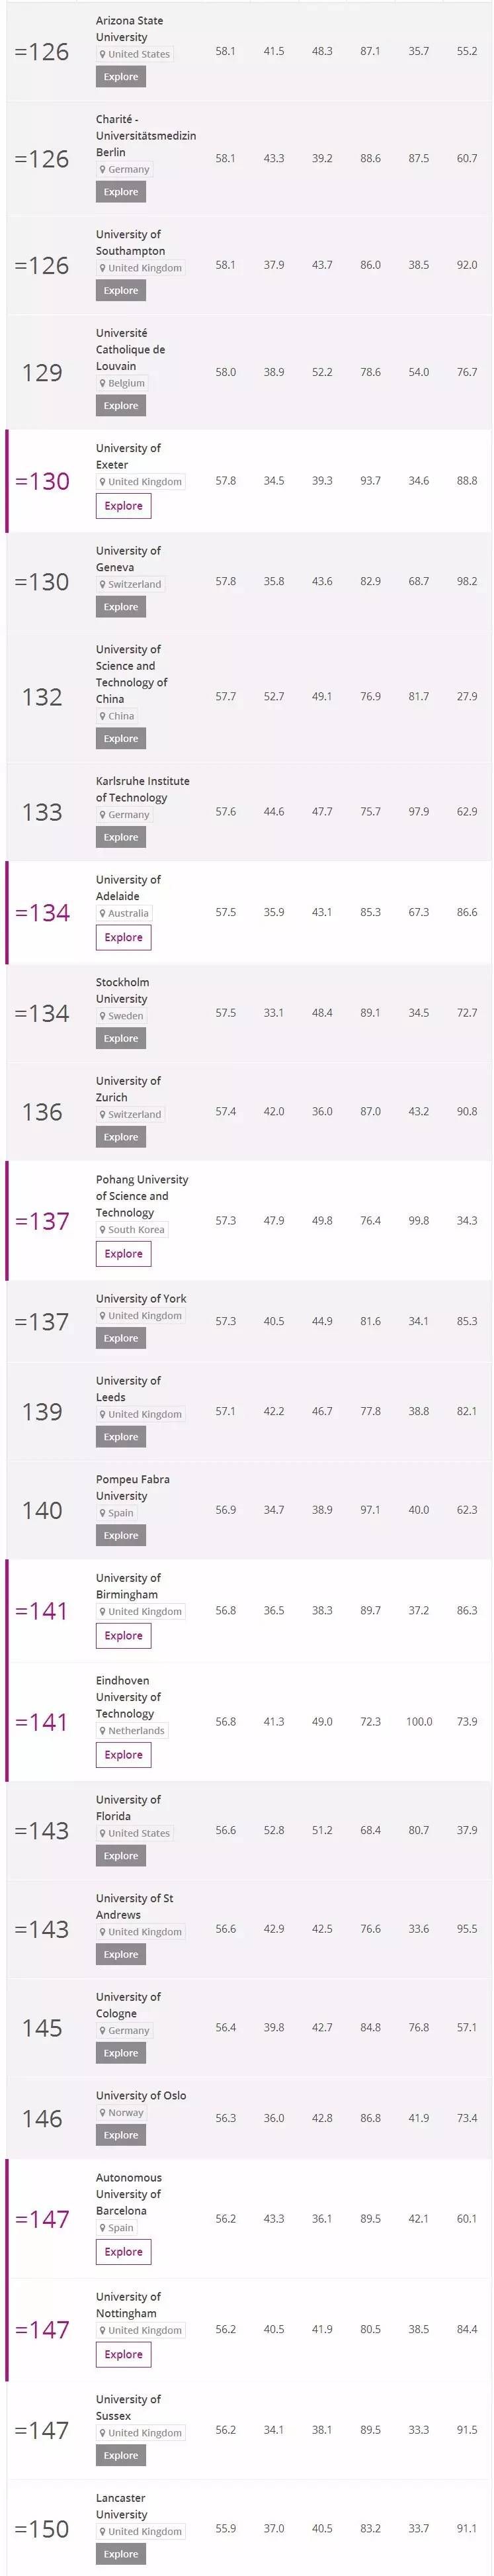 2018年TIMES高等教育世界大学排名出炉